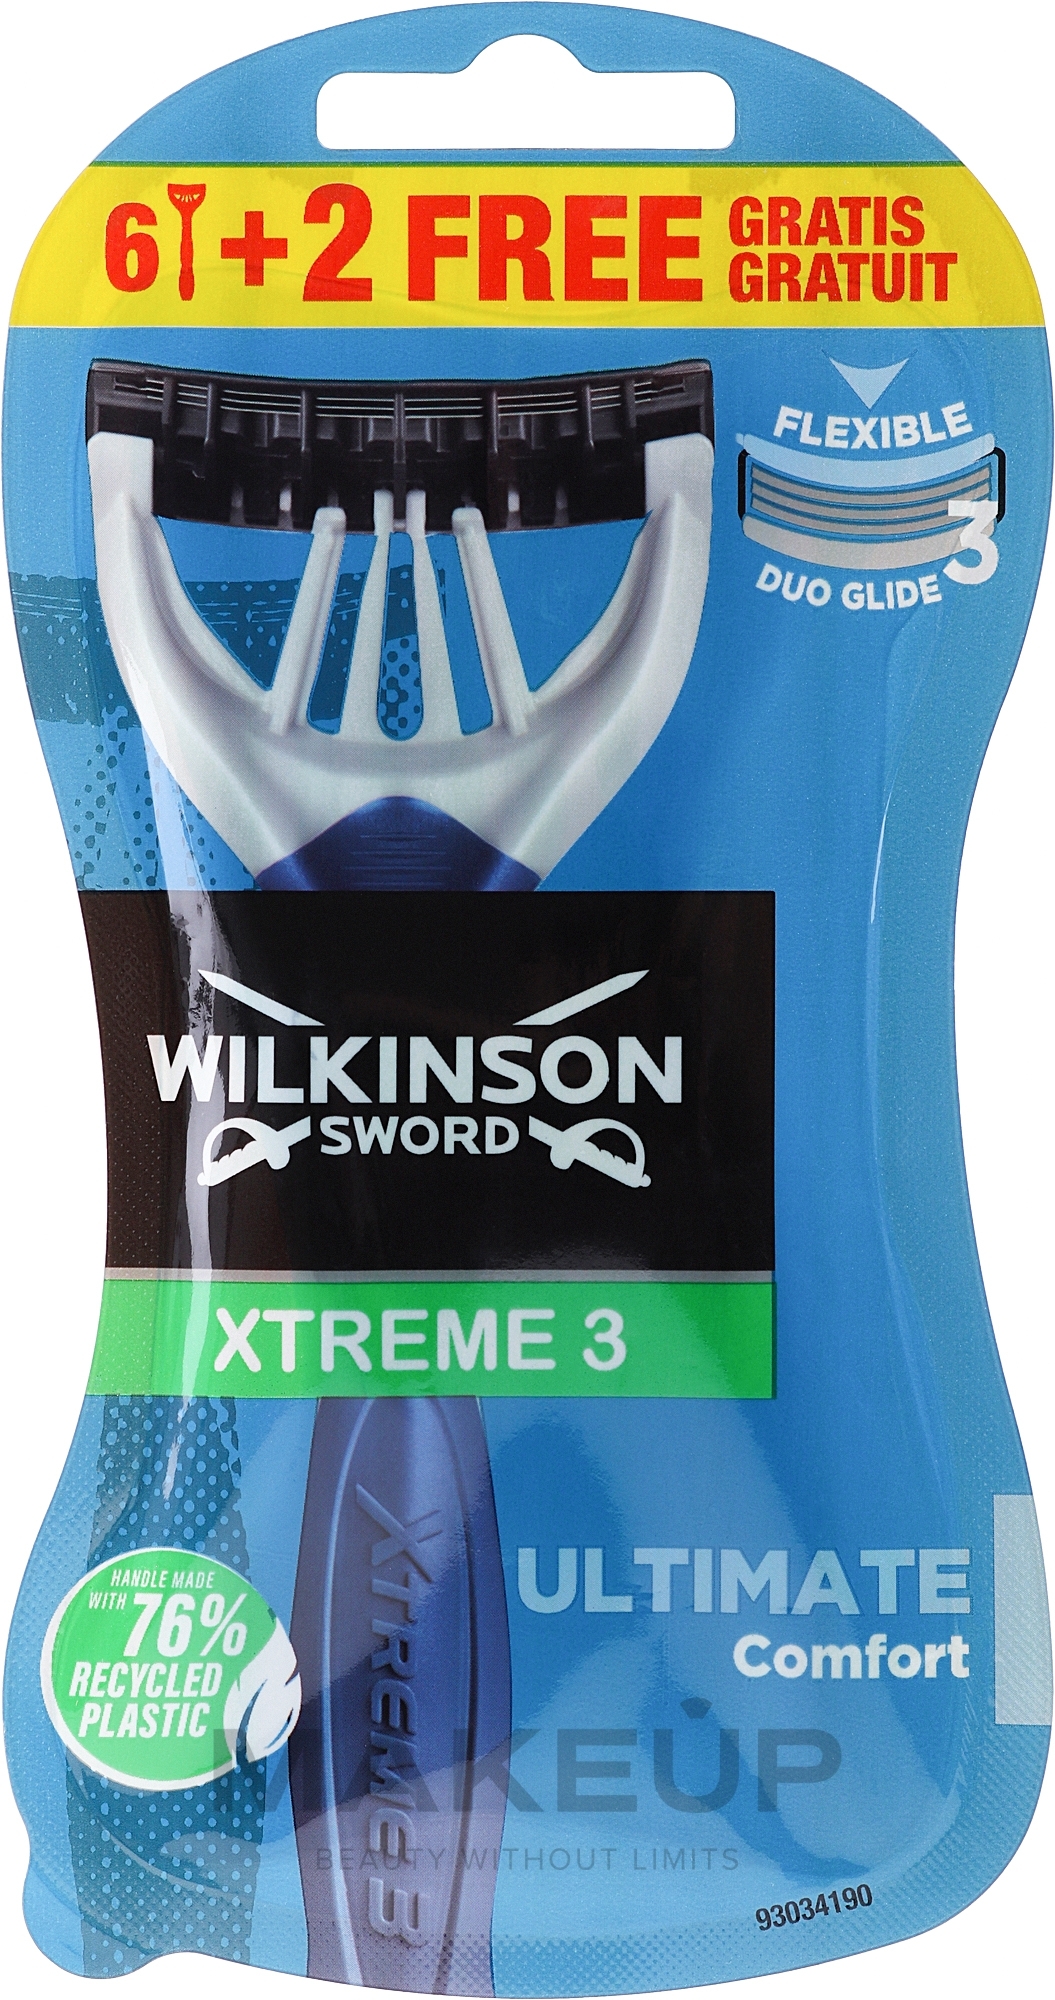 Одноразовые станки, 6 + 2 шт. - Wilkinson Sword Xtreme 3 Ultimate Comfort — фото 8шт